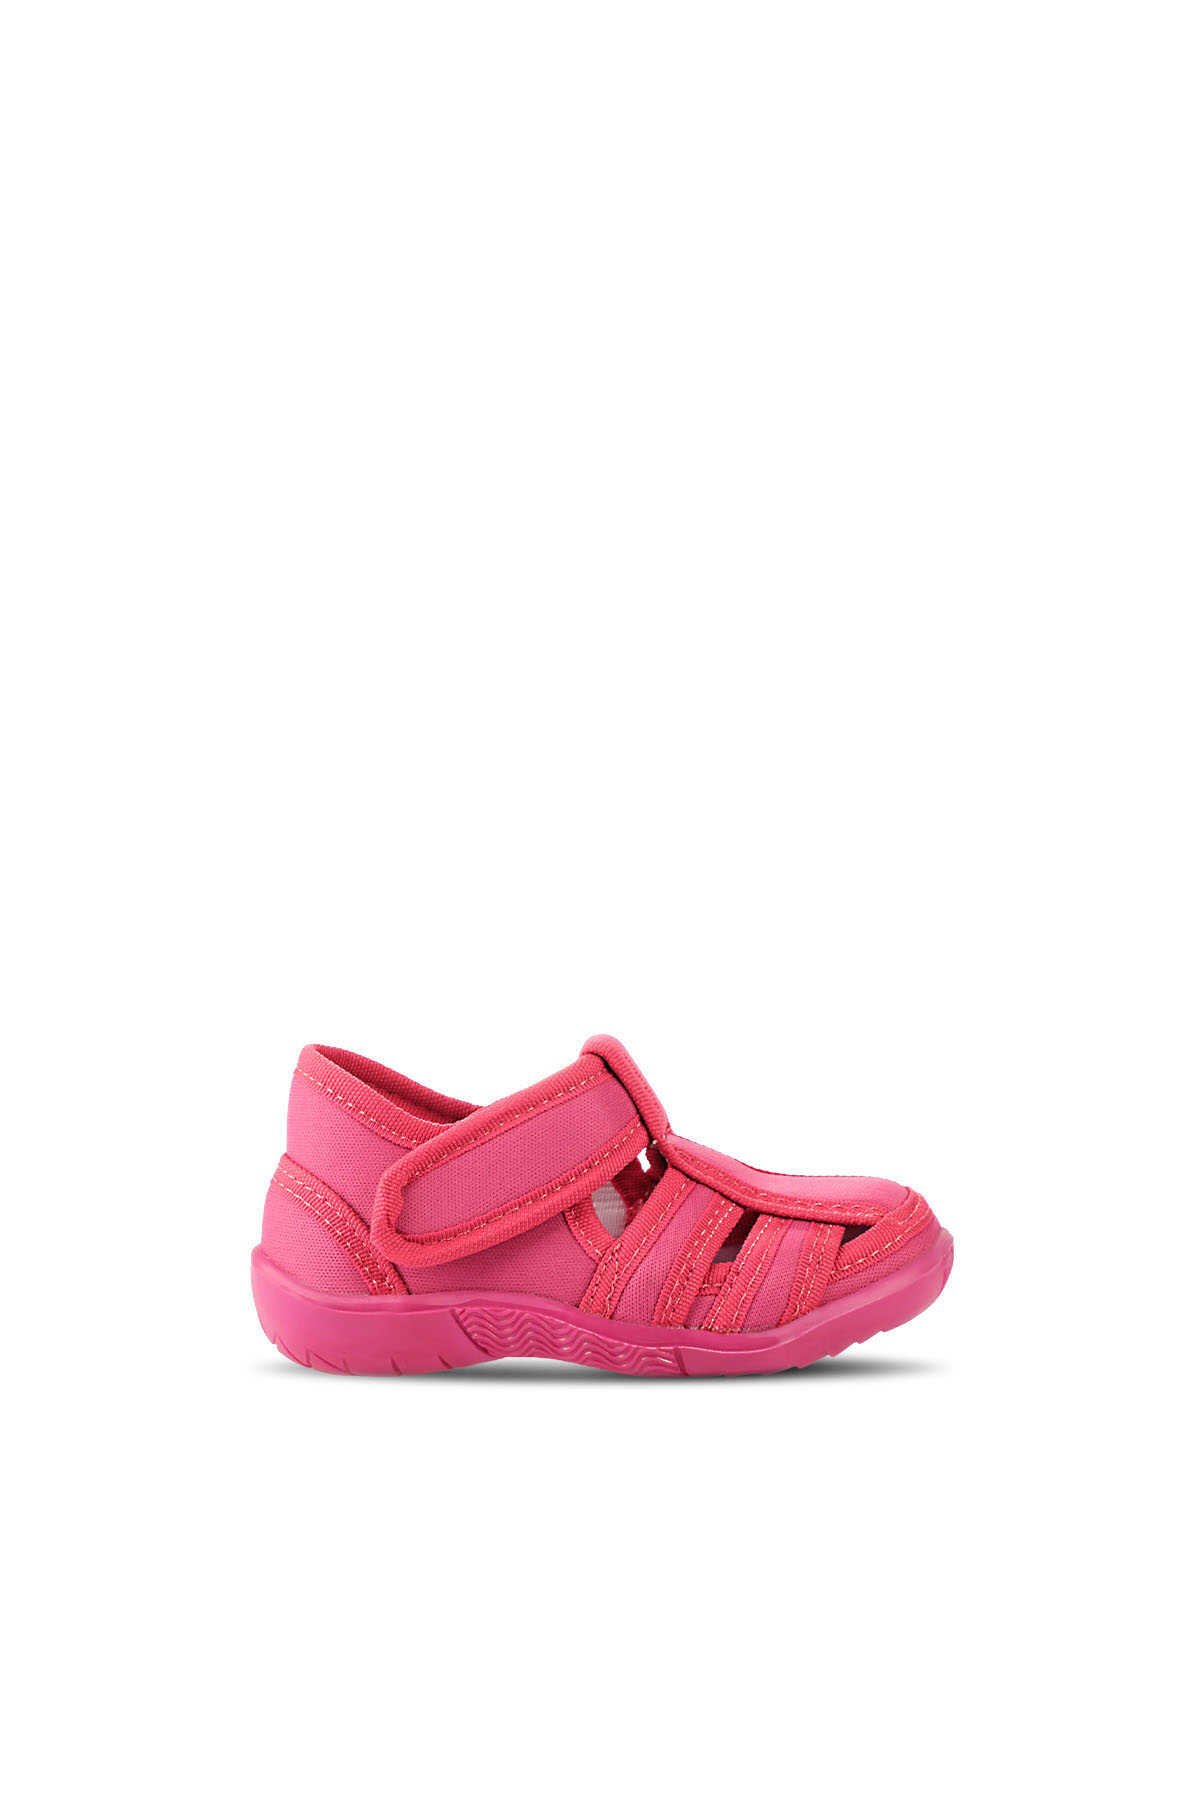 Slazenger - Slazenger UZZY Spor Kız Çocuk Ayakkabı Fuşya